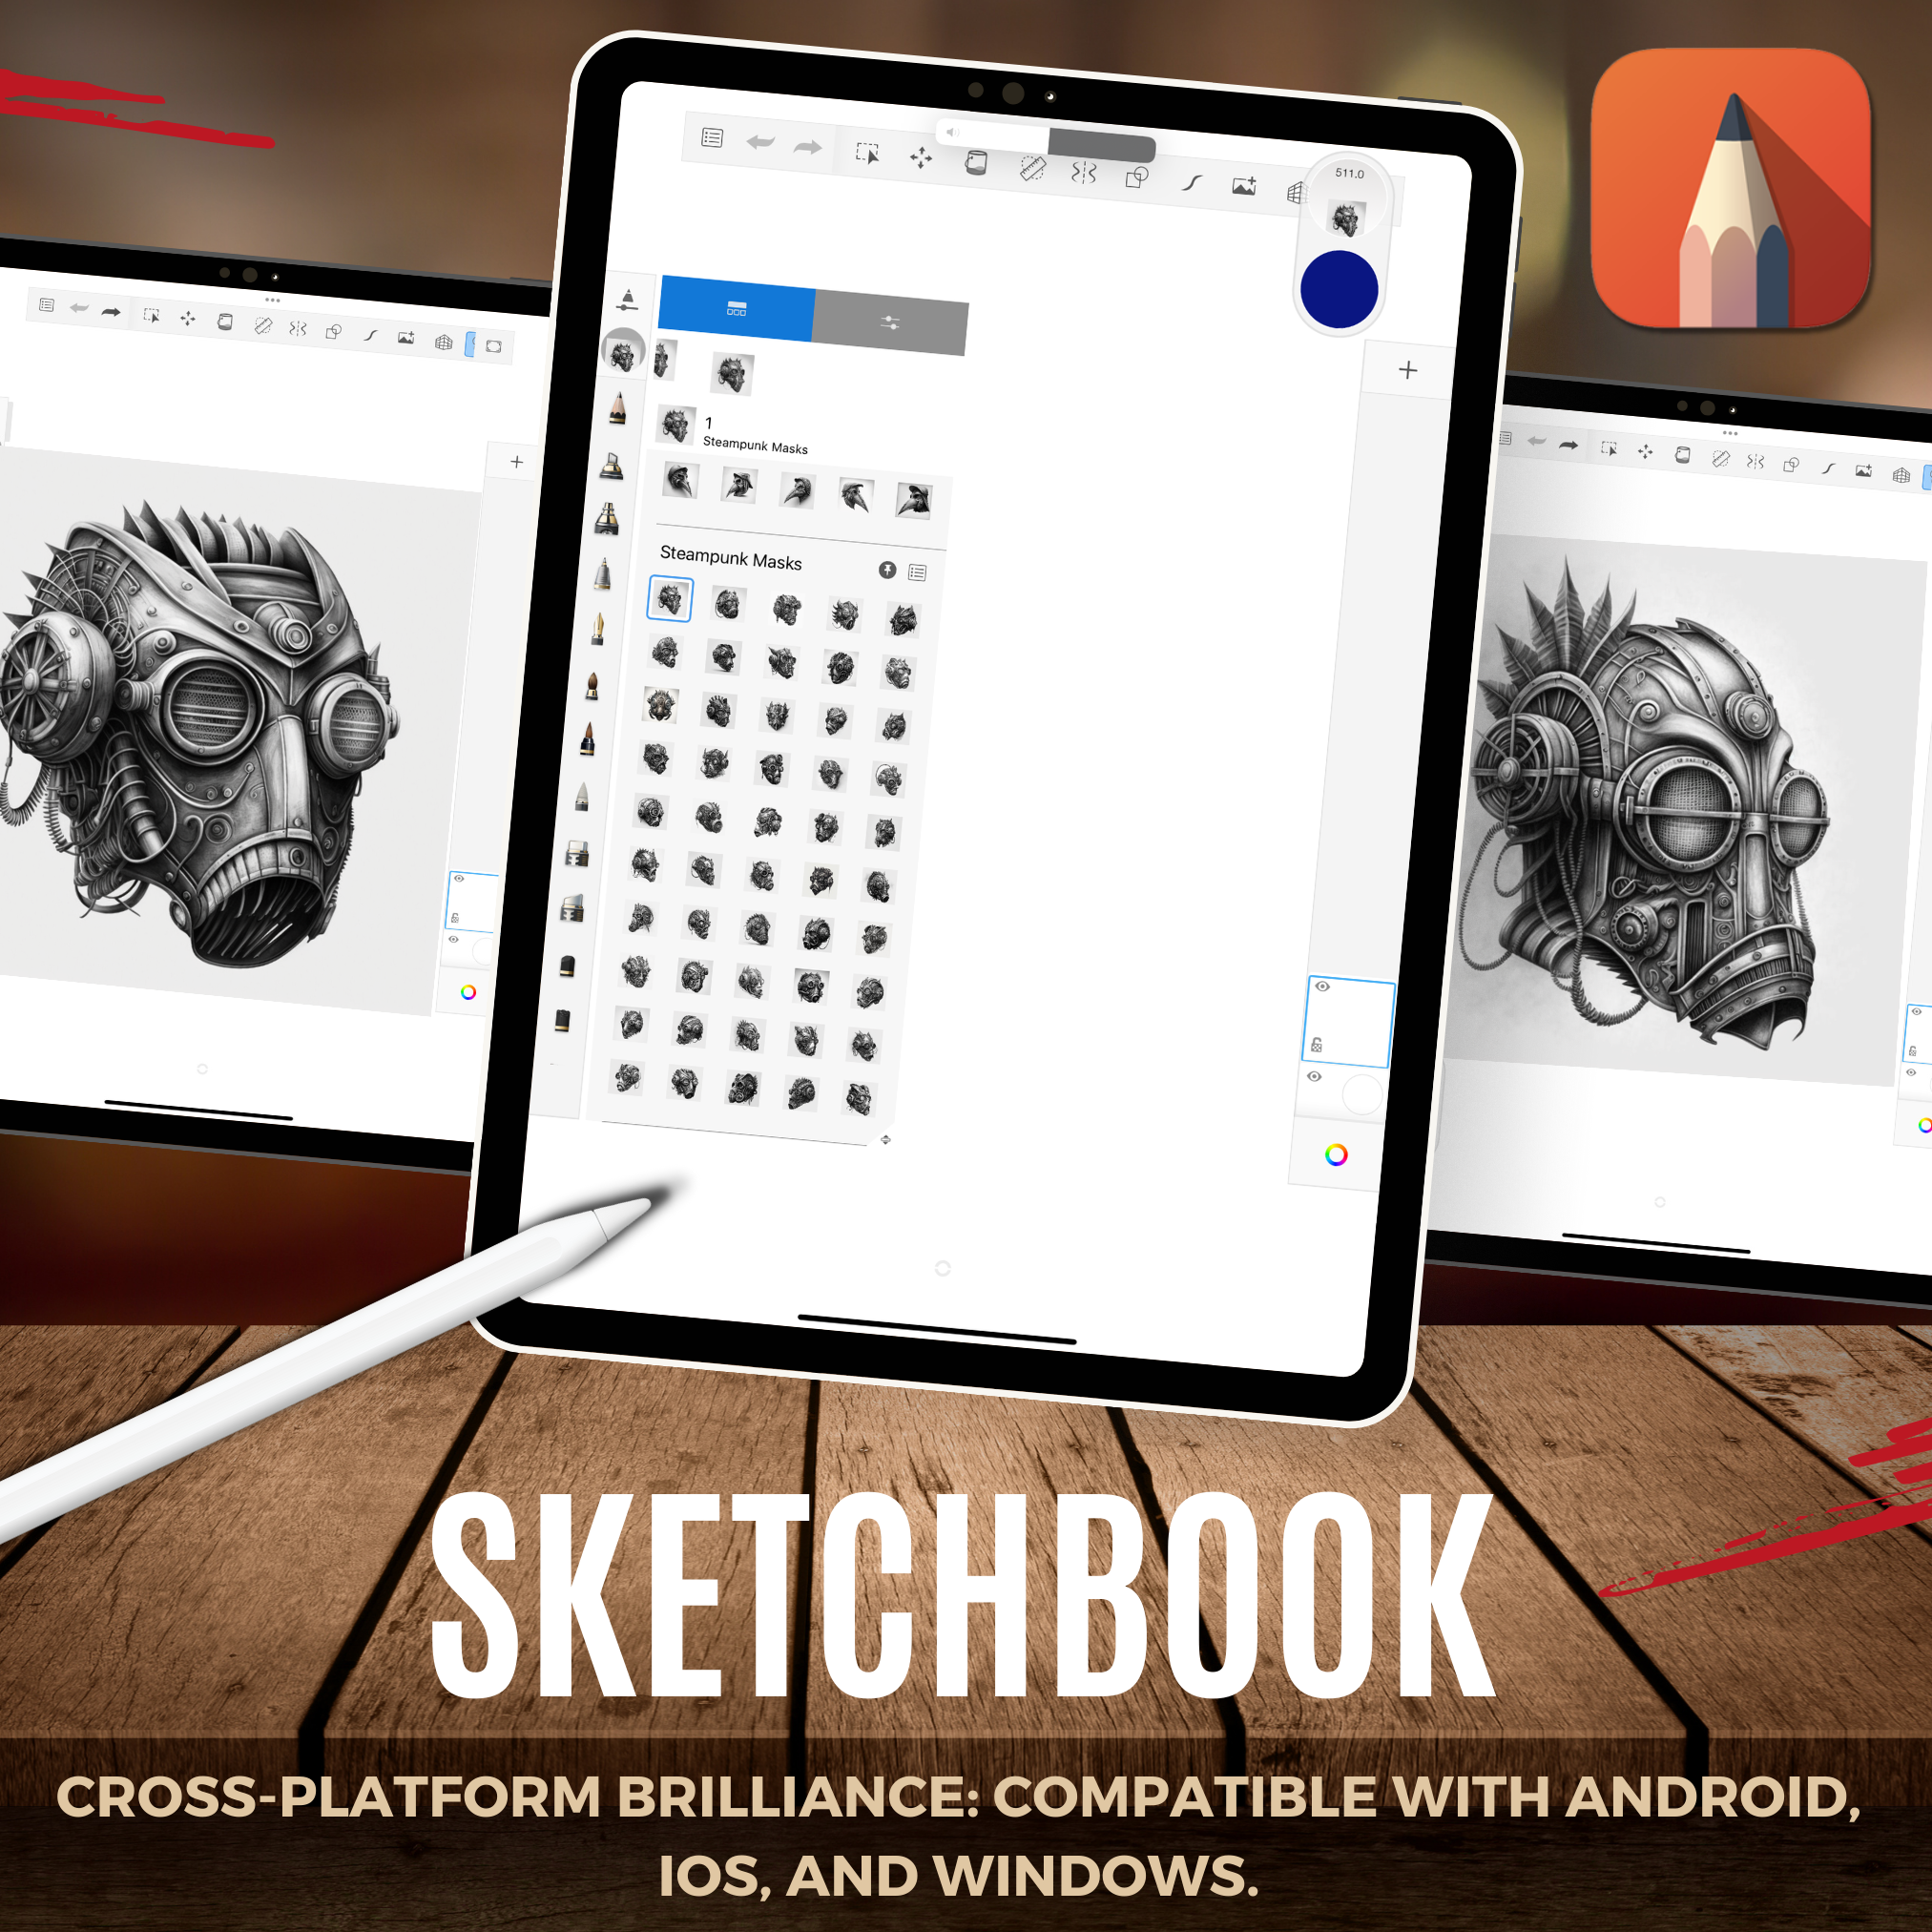 Digitale Referenzdesignsammlung für Steampunk-Masken: 50 Procreate- und Skizzenbuchbilder